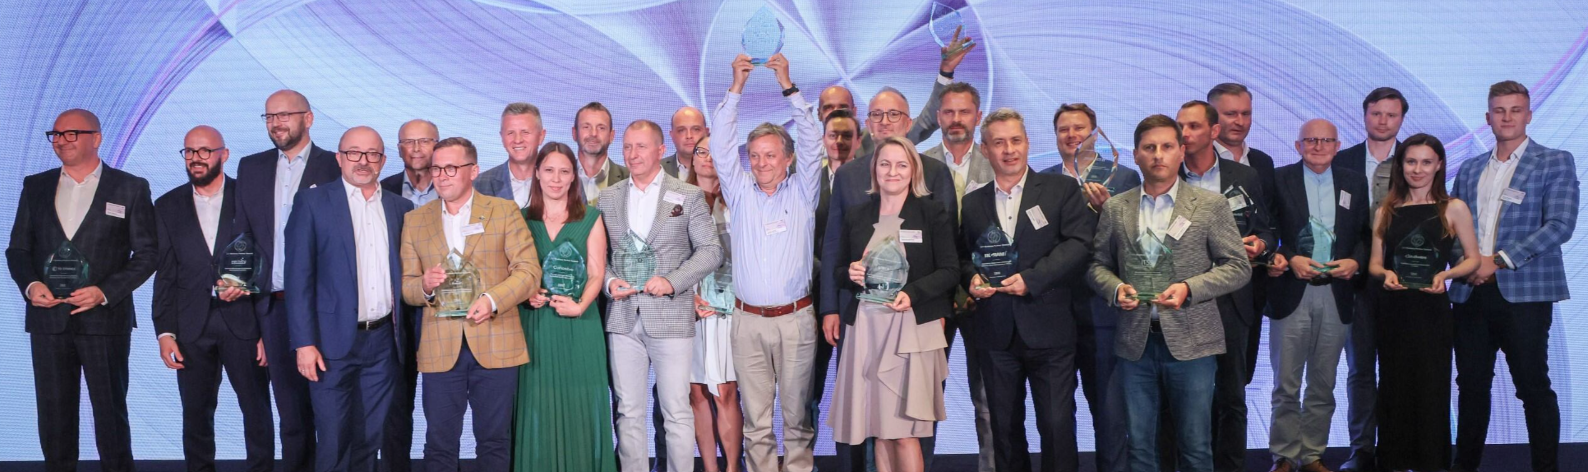 Cohesive wins prestigious IBM award